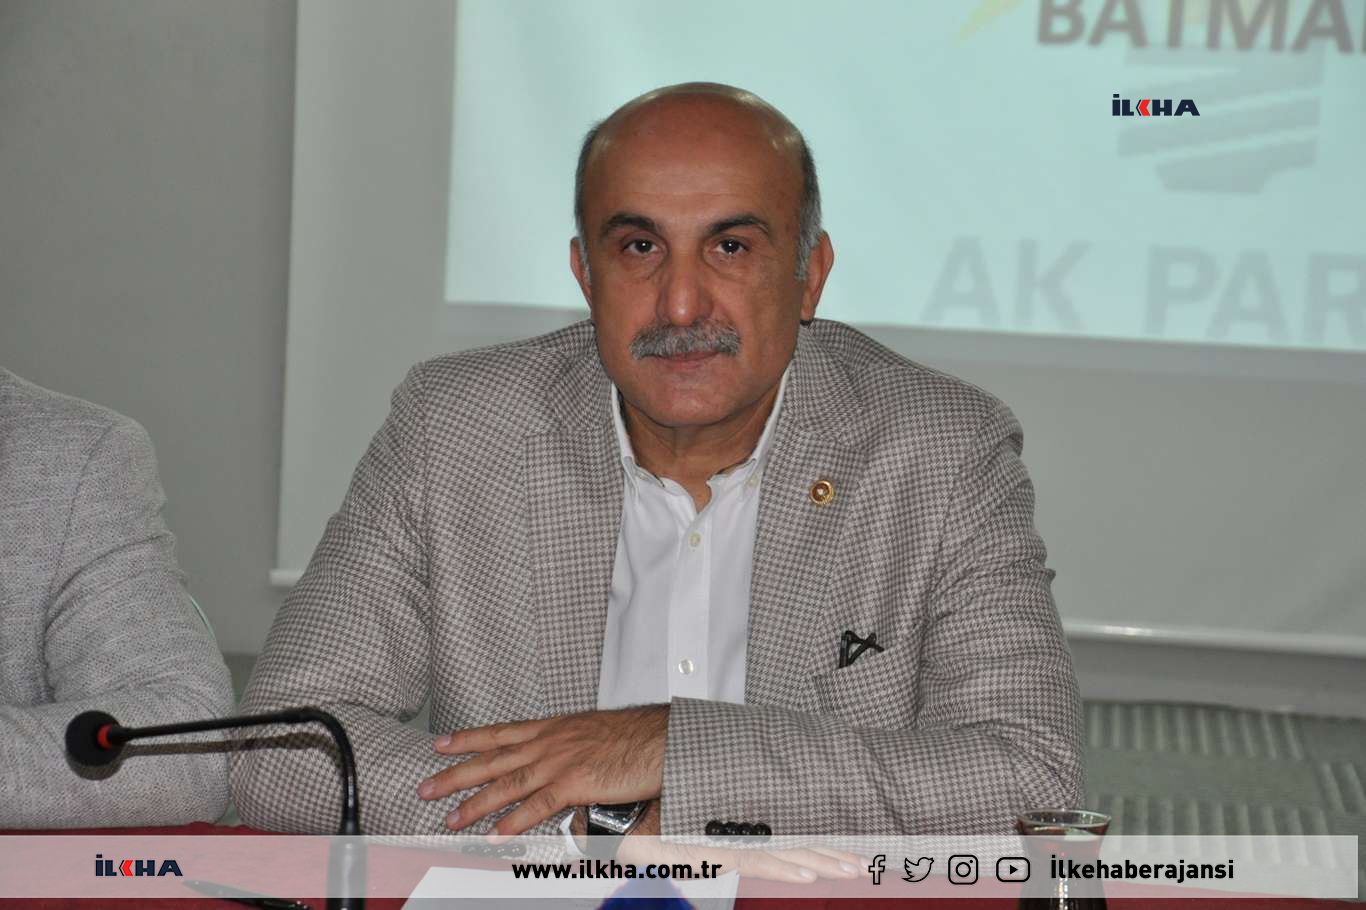 Milletvekili Özdemir: “Pandeminin olumsuz etkilediği projeler en kısa sürede bitirilecek” 